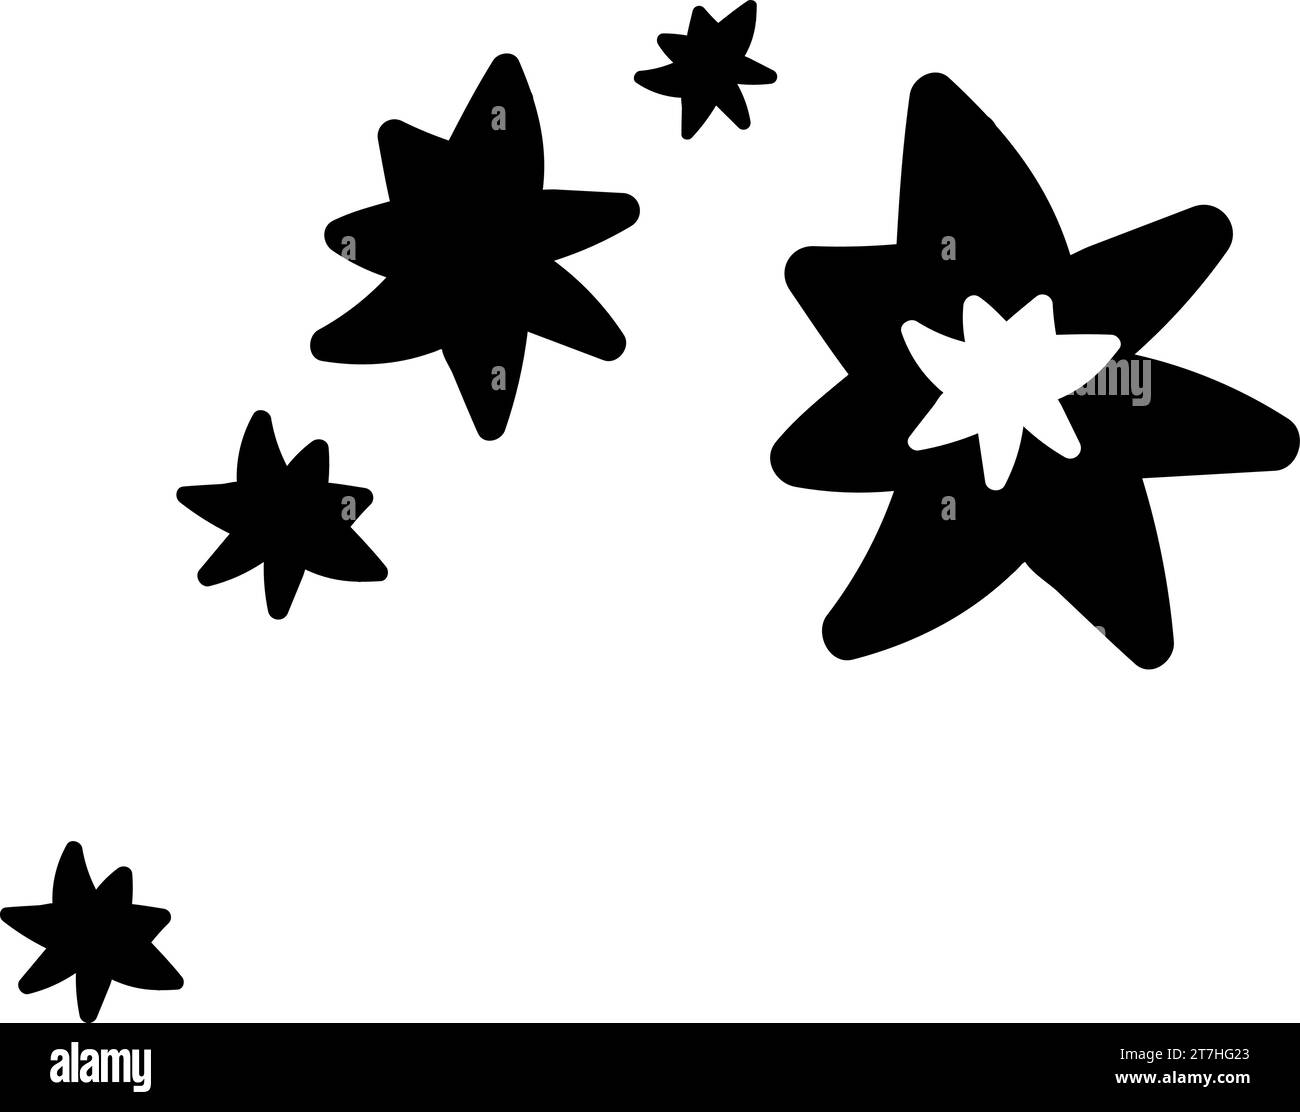 Doodle silhouette de feux d'artifice confettis et étincelles, élément de décoration de festival d'hiver. Feux d'artifice confettis, symbole de fête d'hiver. Forme noire simple Illustration de Vecteur